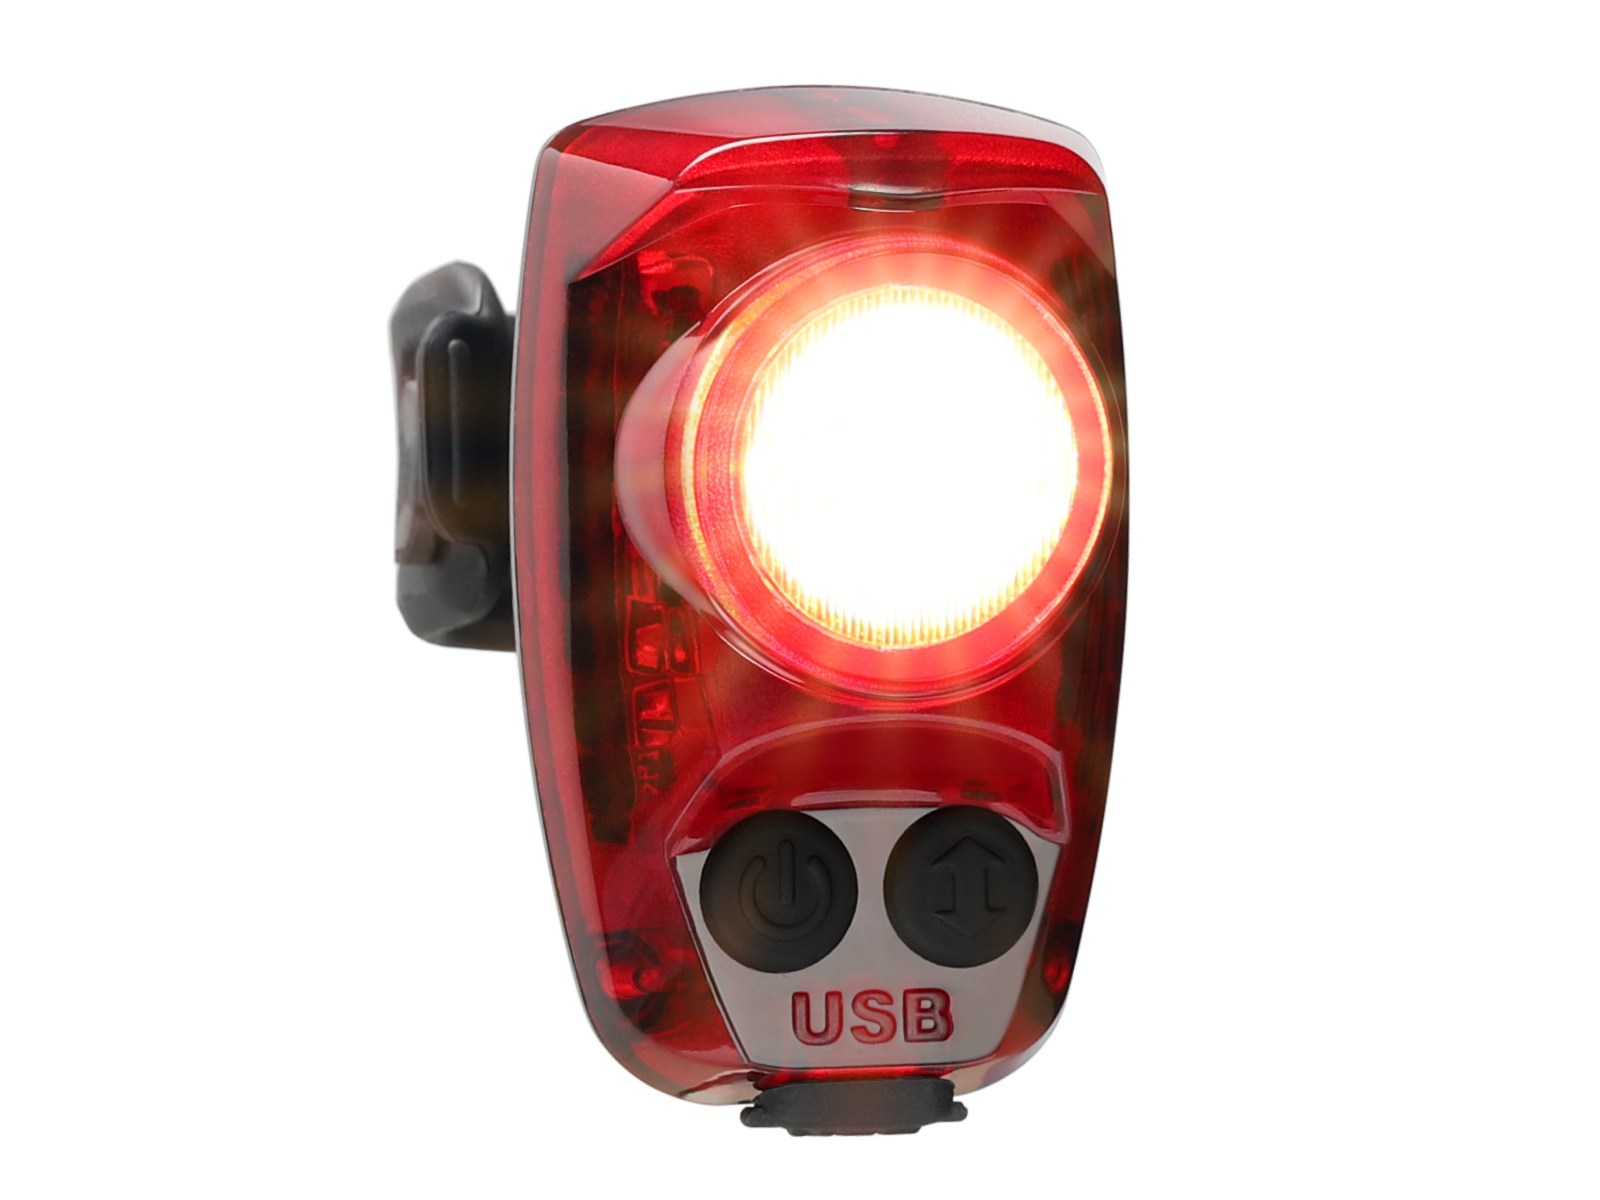 Задний фонарь для велосипеда Hotshot Pro 200 люмен Cygolite, красный задний фонарь для велосипеда перезаряжаемая водонепроницаемая лампа задний фонарь для горного велосипеда задний фонарь для велосипеда